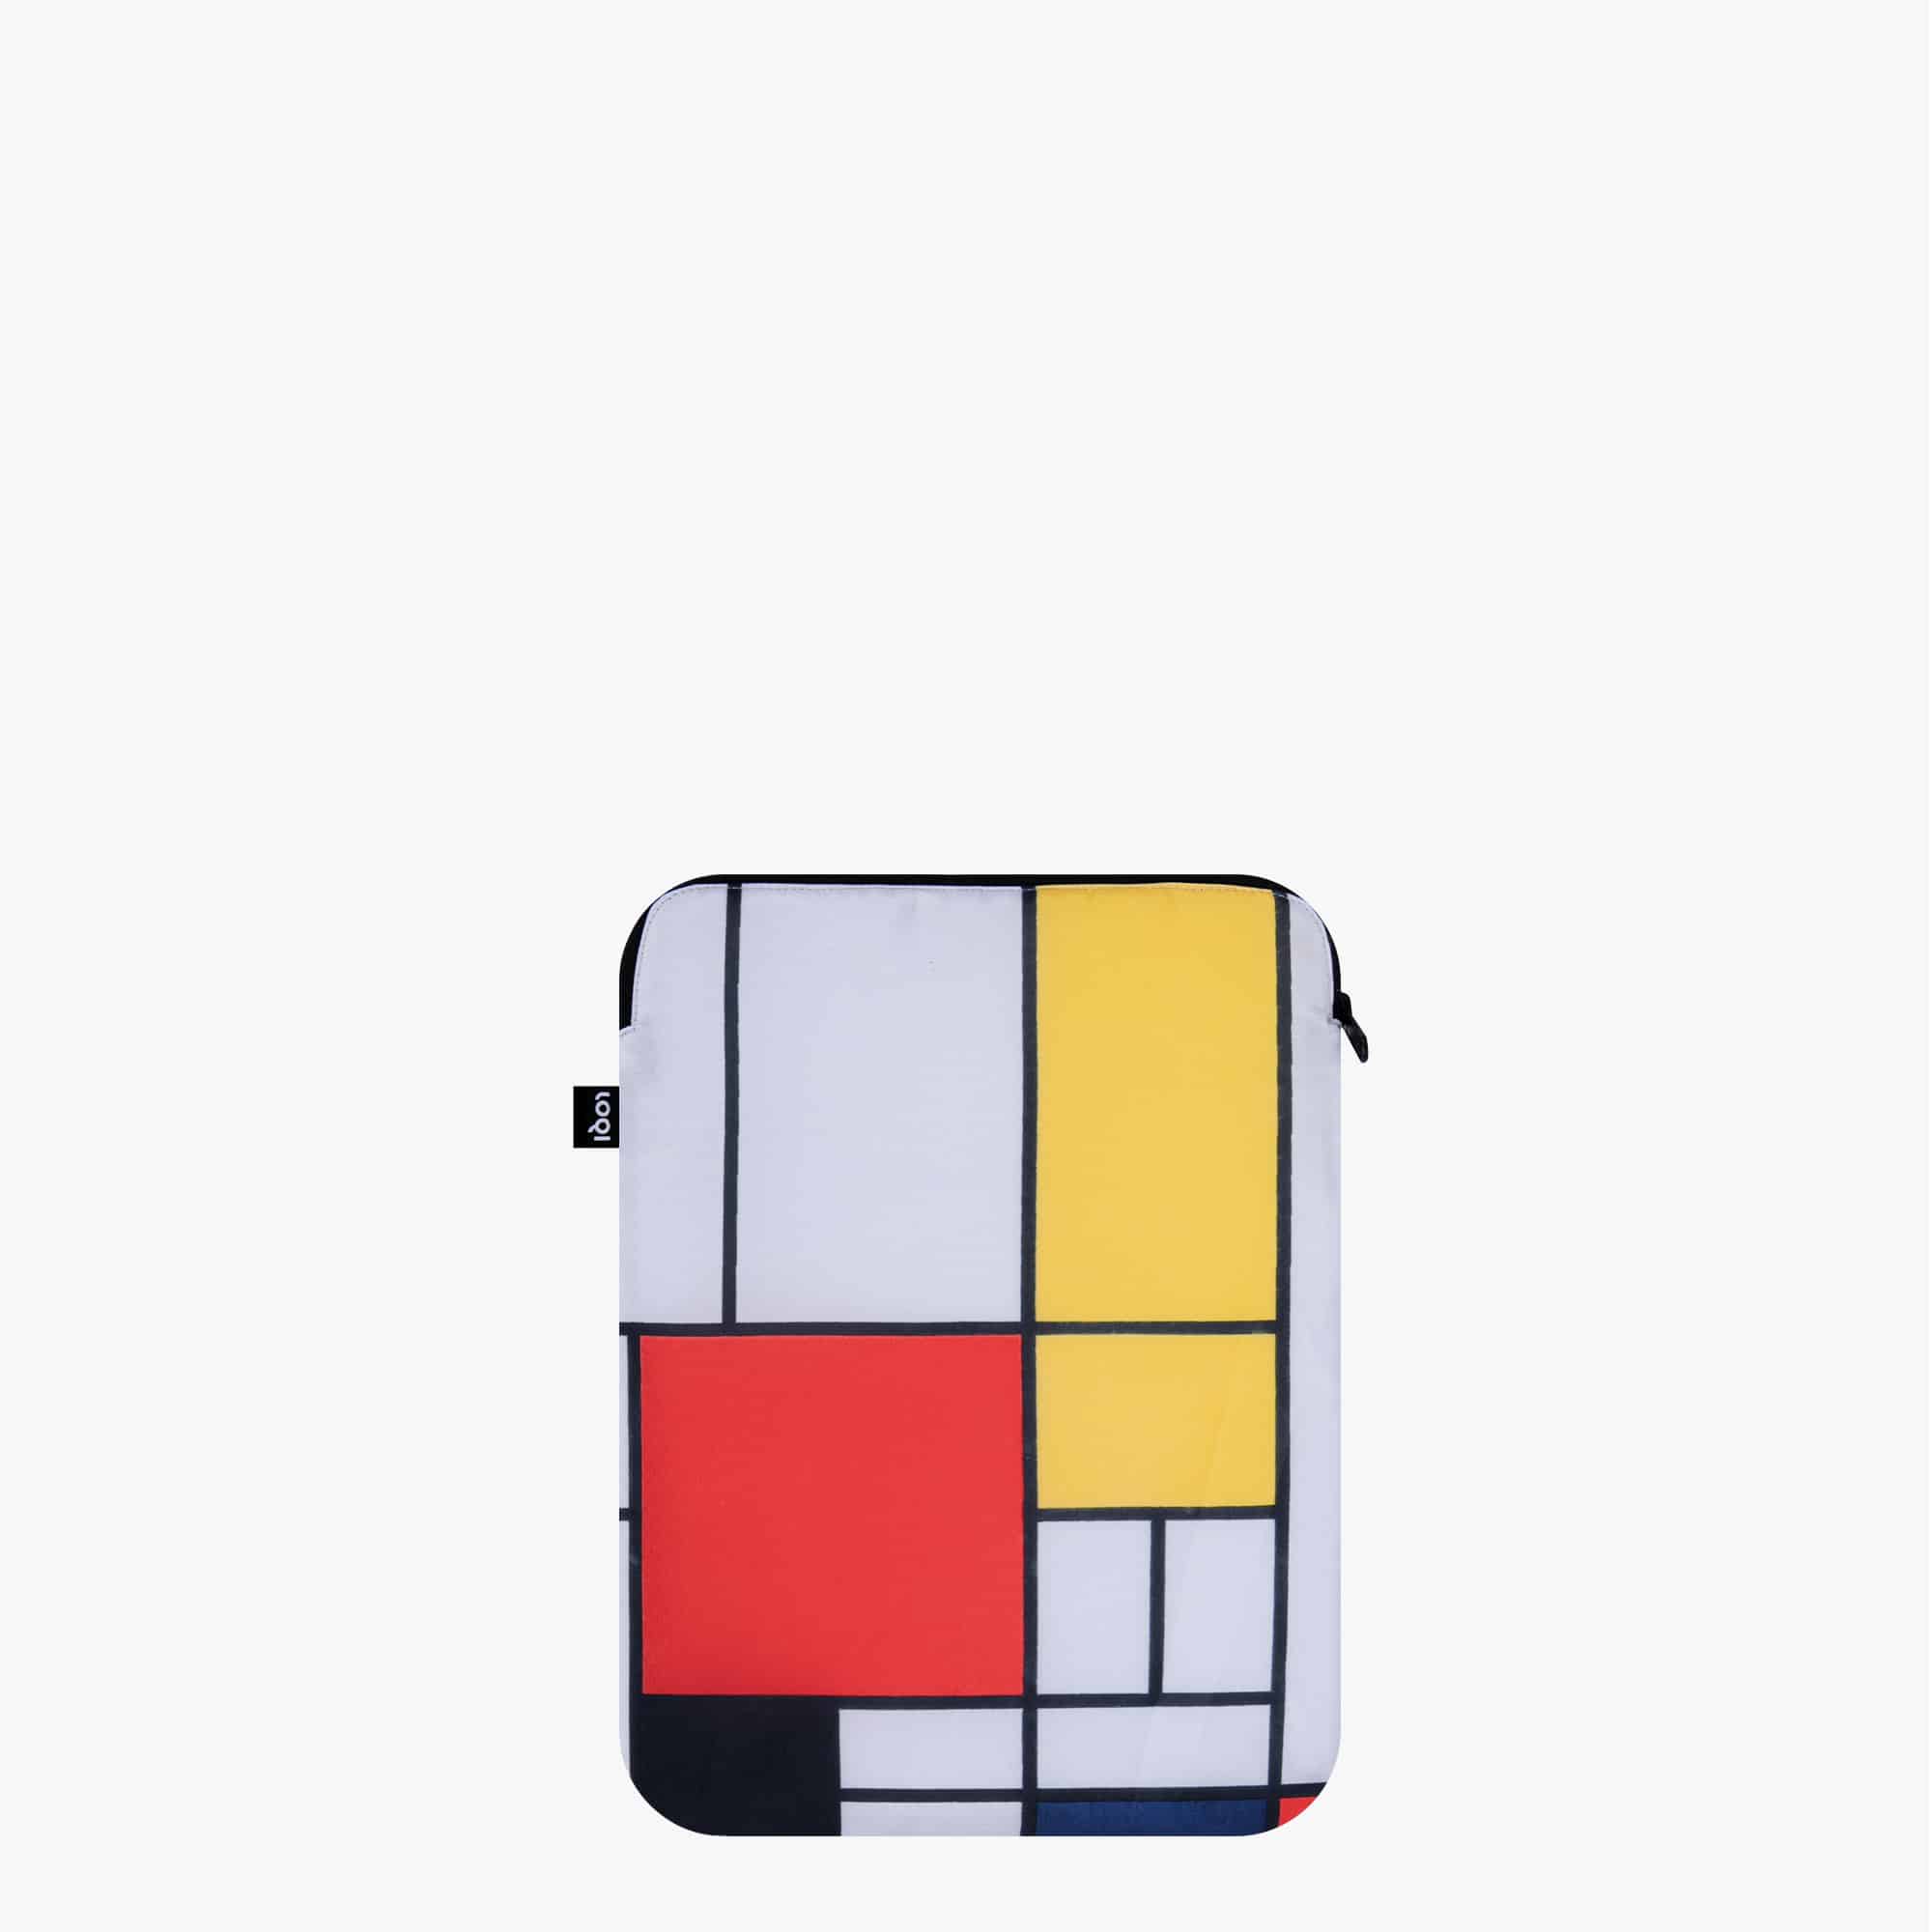 כיסוי מעטפת למחשב נייד – “קומפזיציה באדום, צהוב וכחול” של פיט מונדריאן (1921)